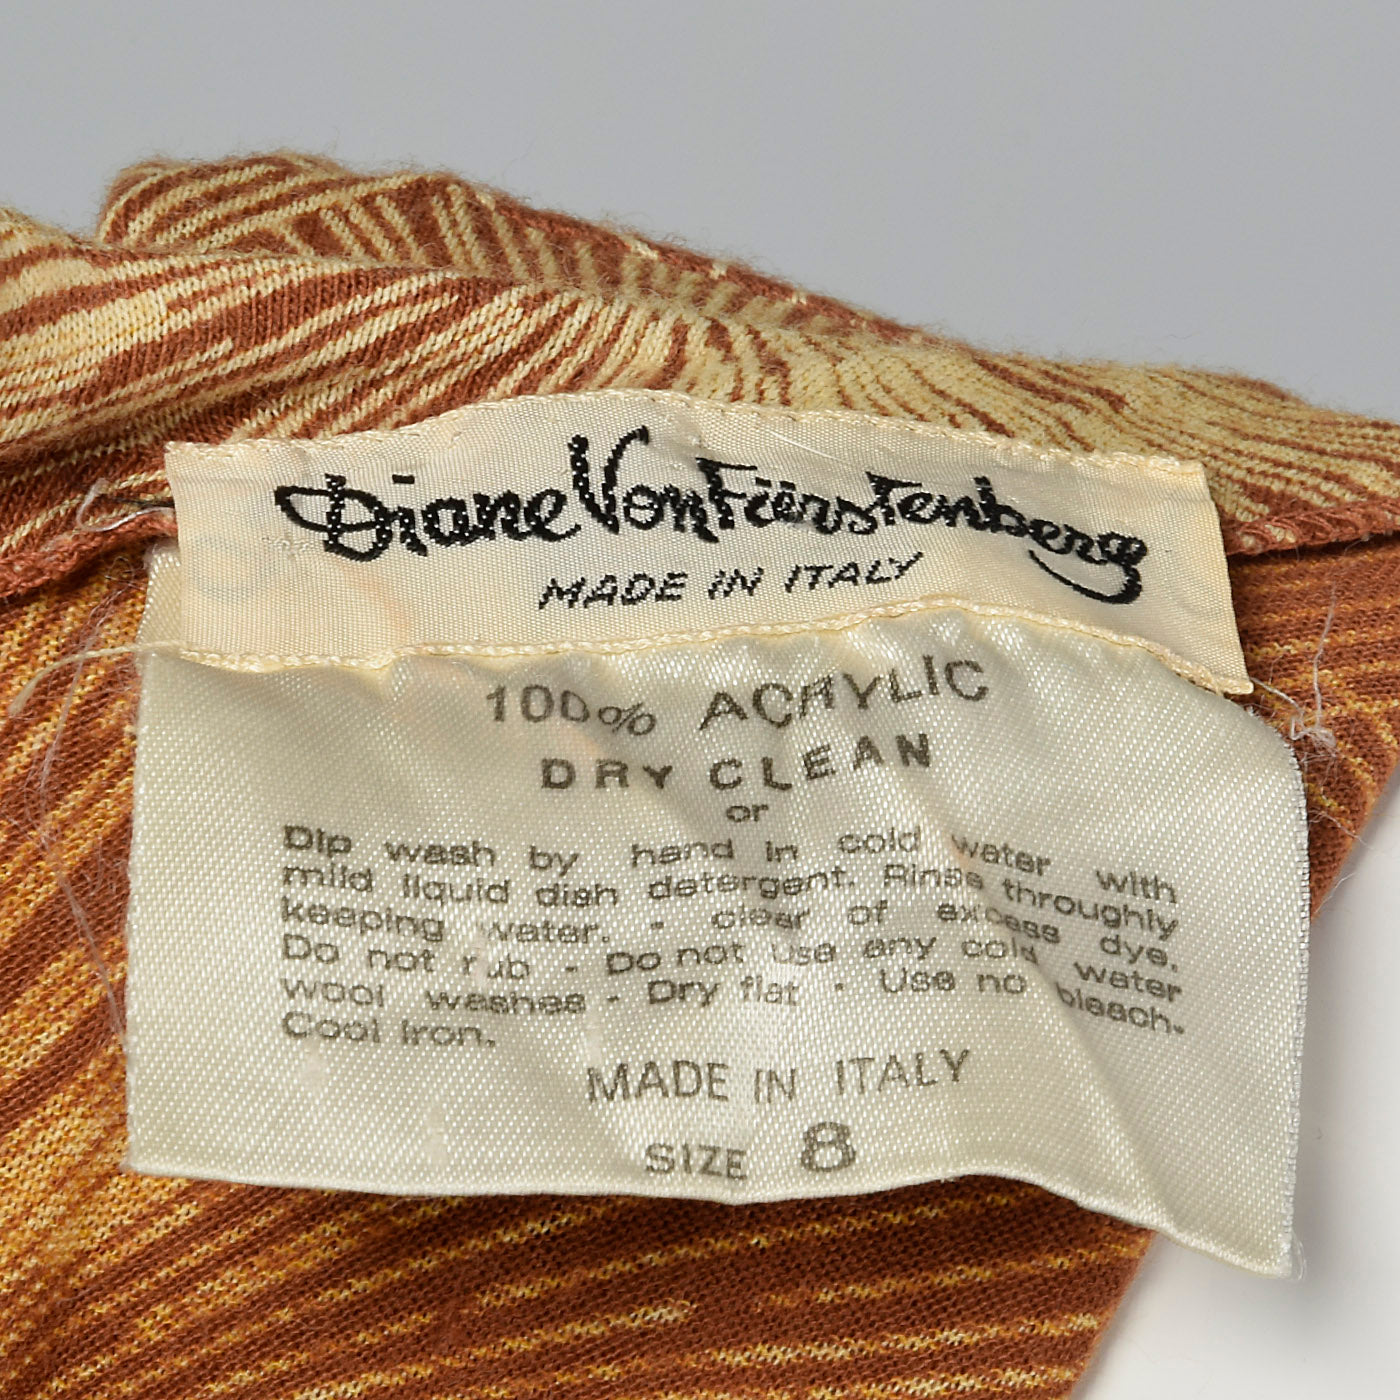 1970s Diane Von Furstenberg Brown Knit Dress